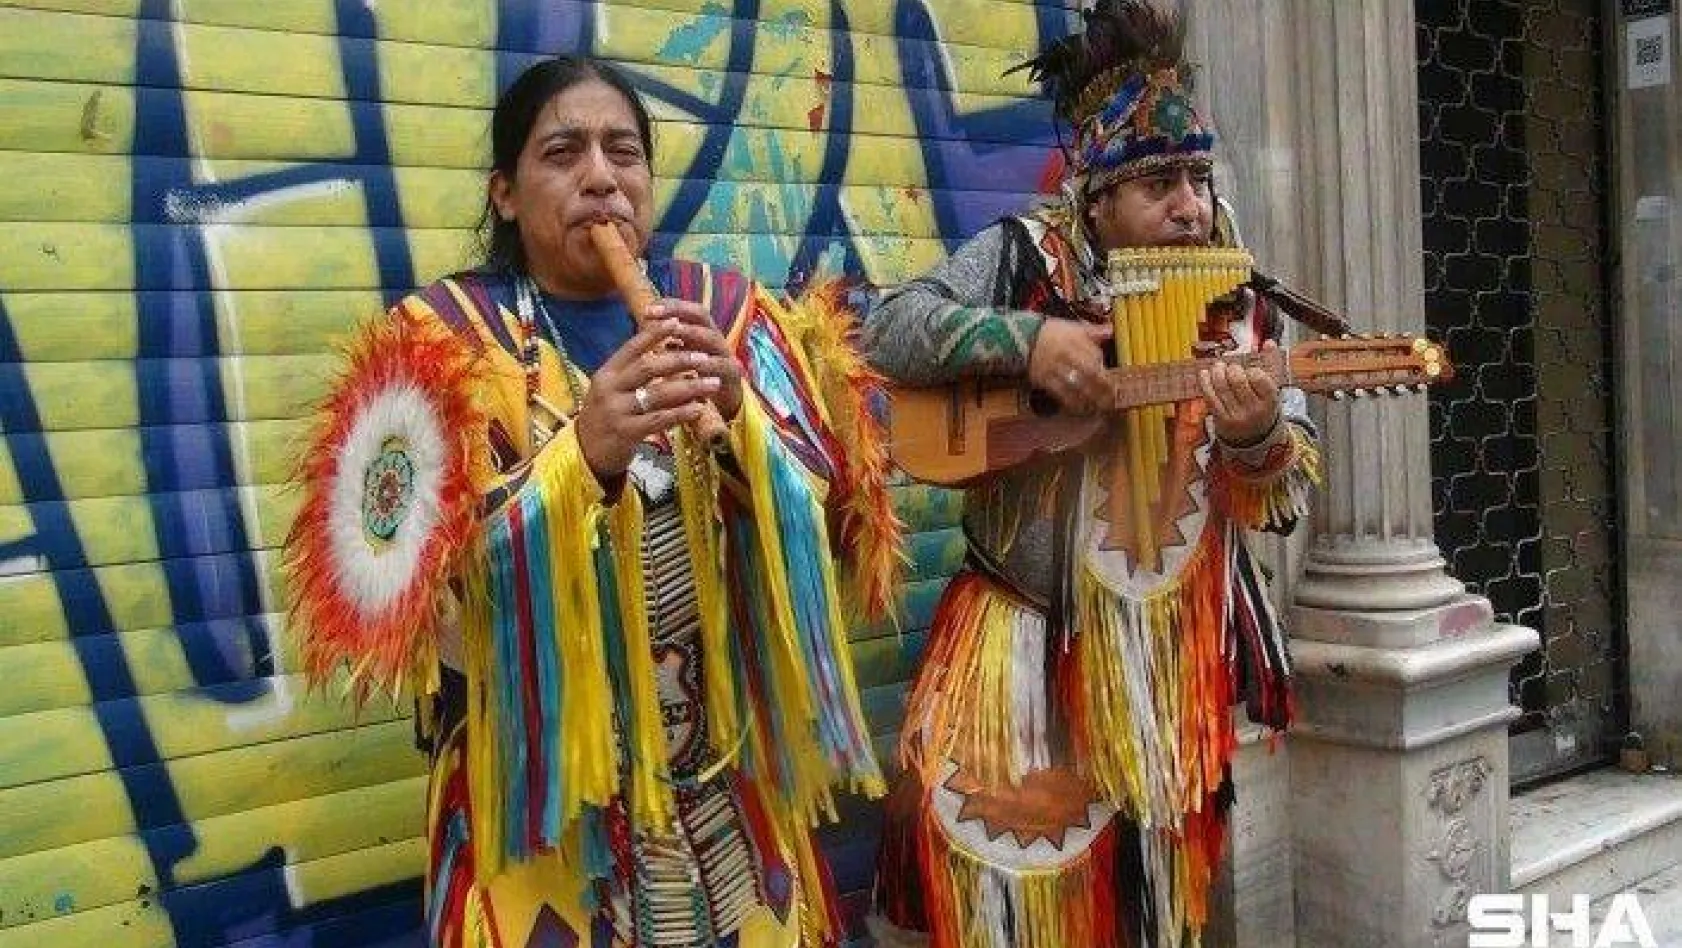 İstiklal Caddesi'nde Kızılderili kıyafetli sokak müzisyenlerine yoğun ilgi